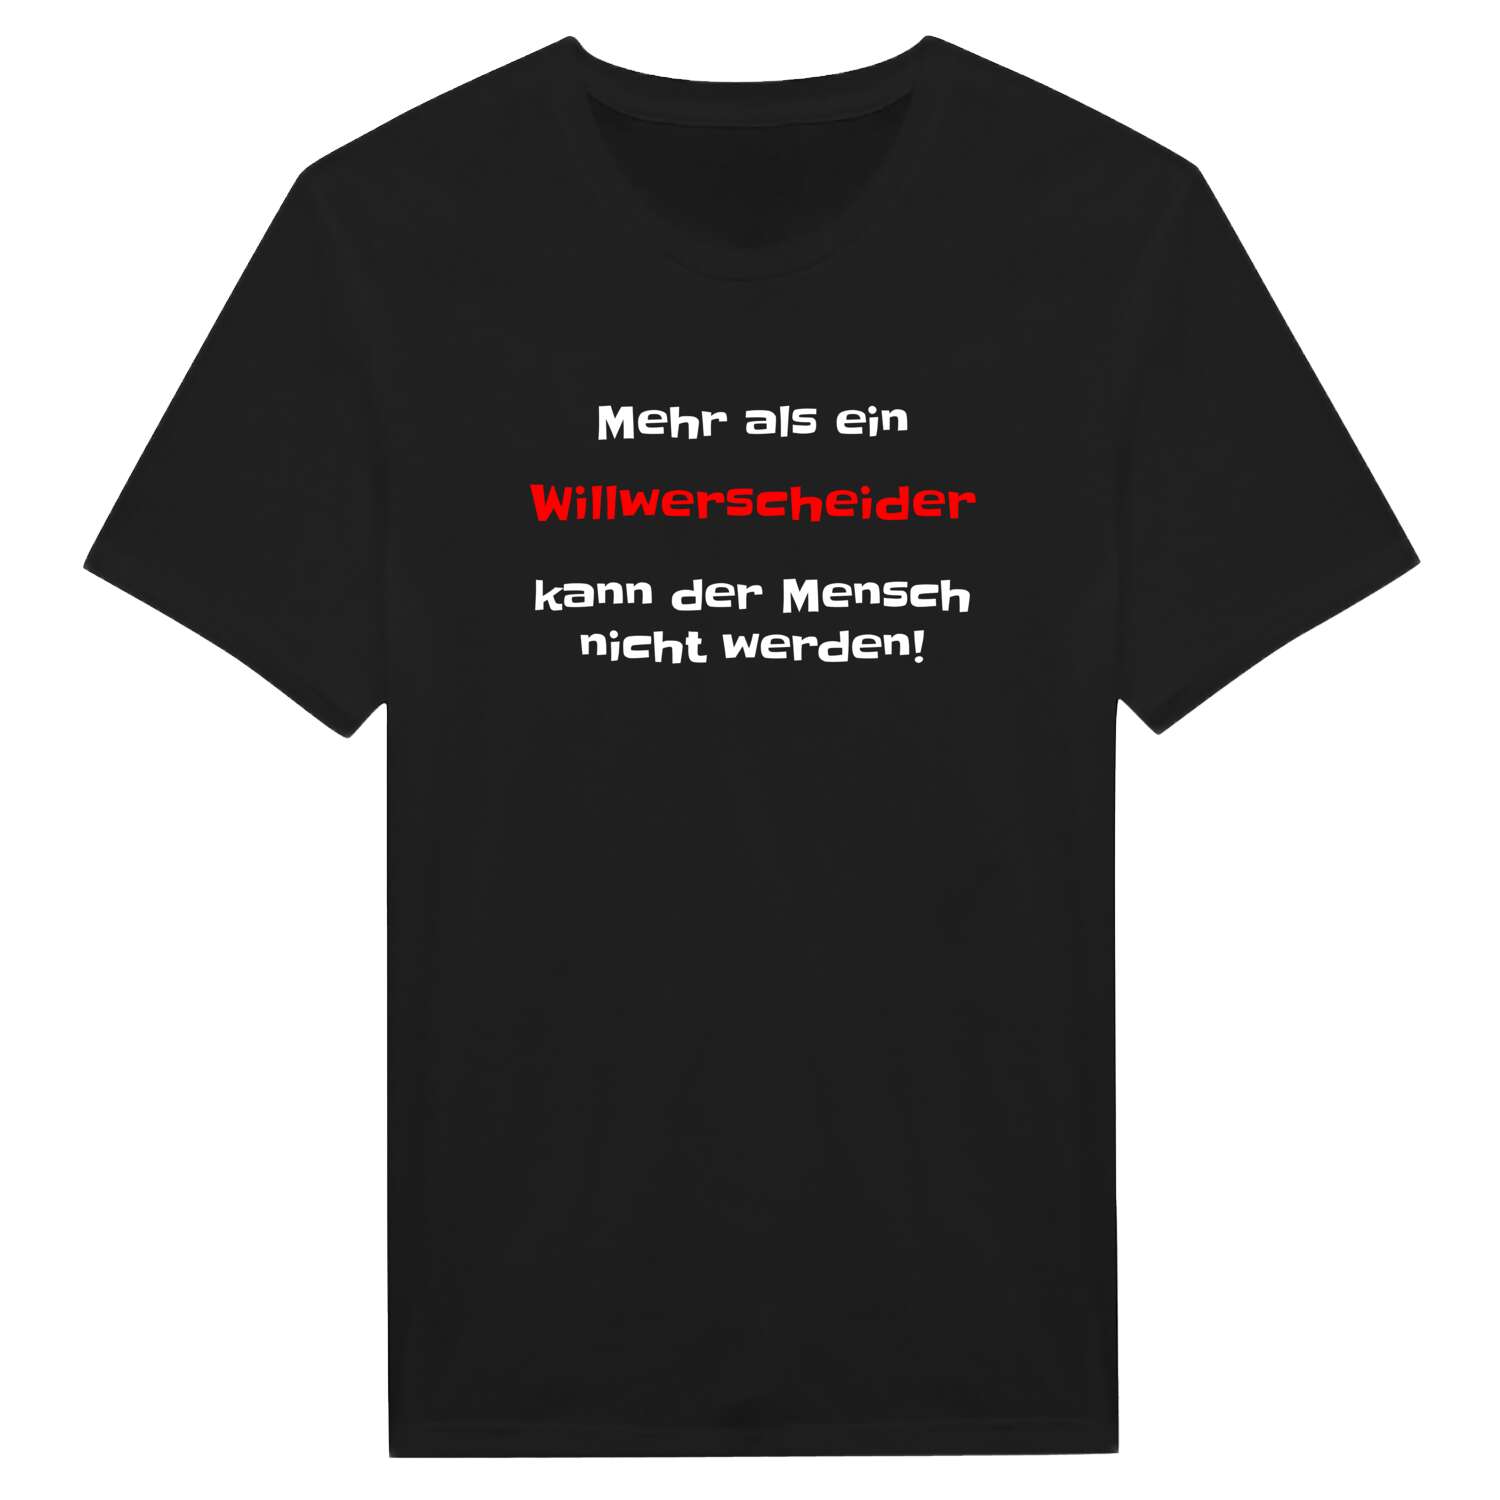 Willwerscheid T-Shirt »Mehr als ein«